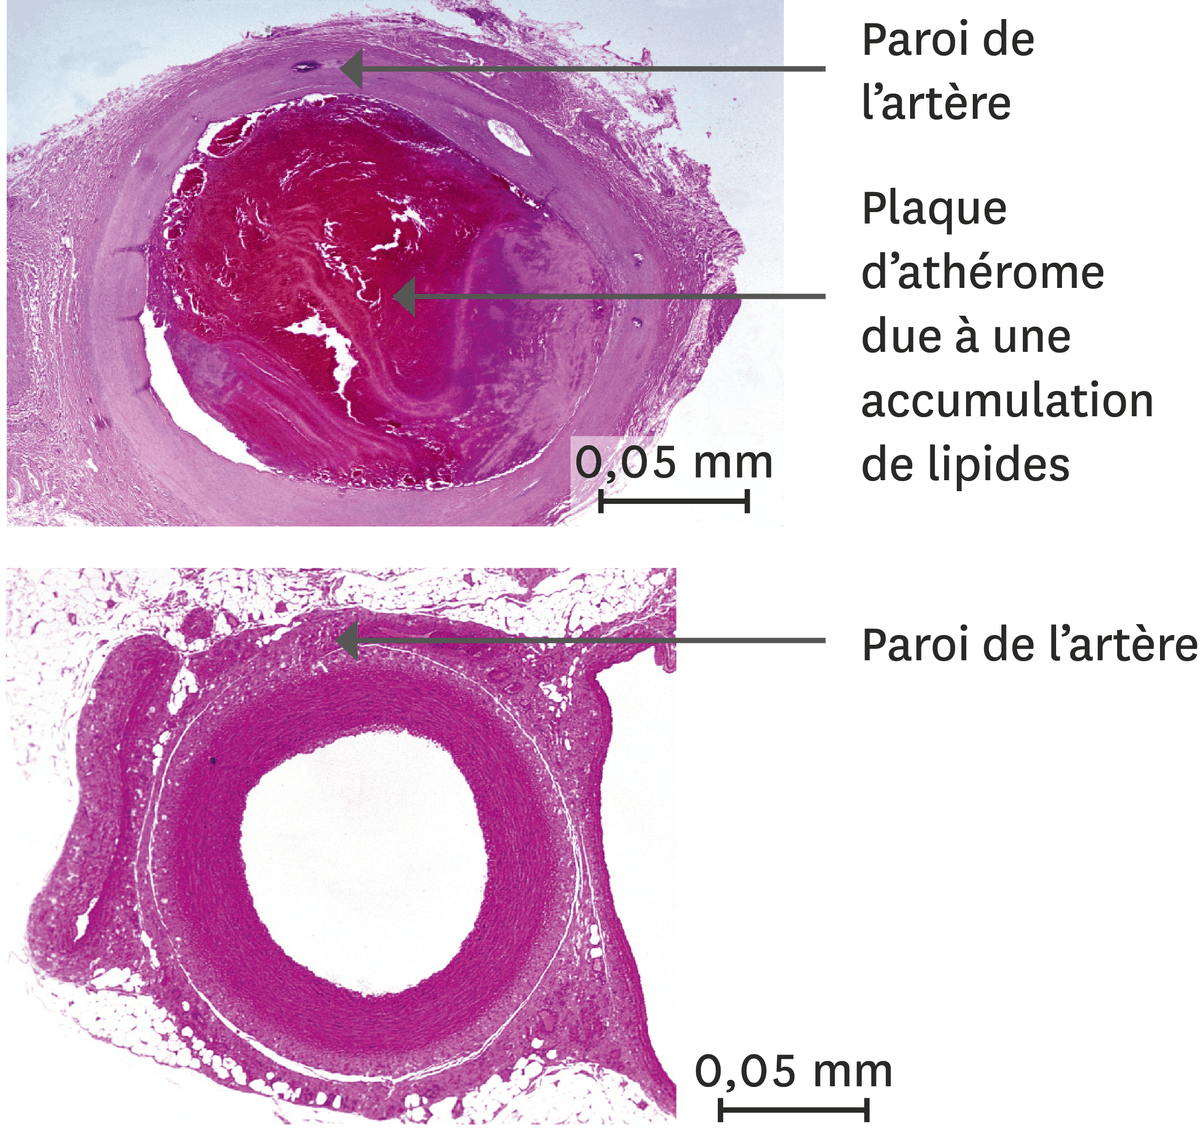 Une comparaison entre une artère d'un orteil en nécrose (en haut) et d'une artère normale (en bas).